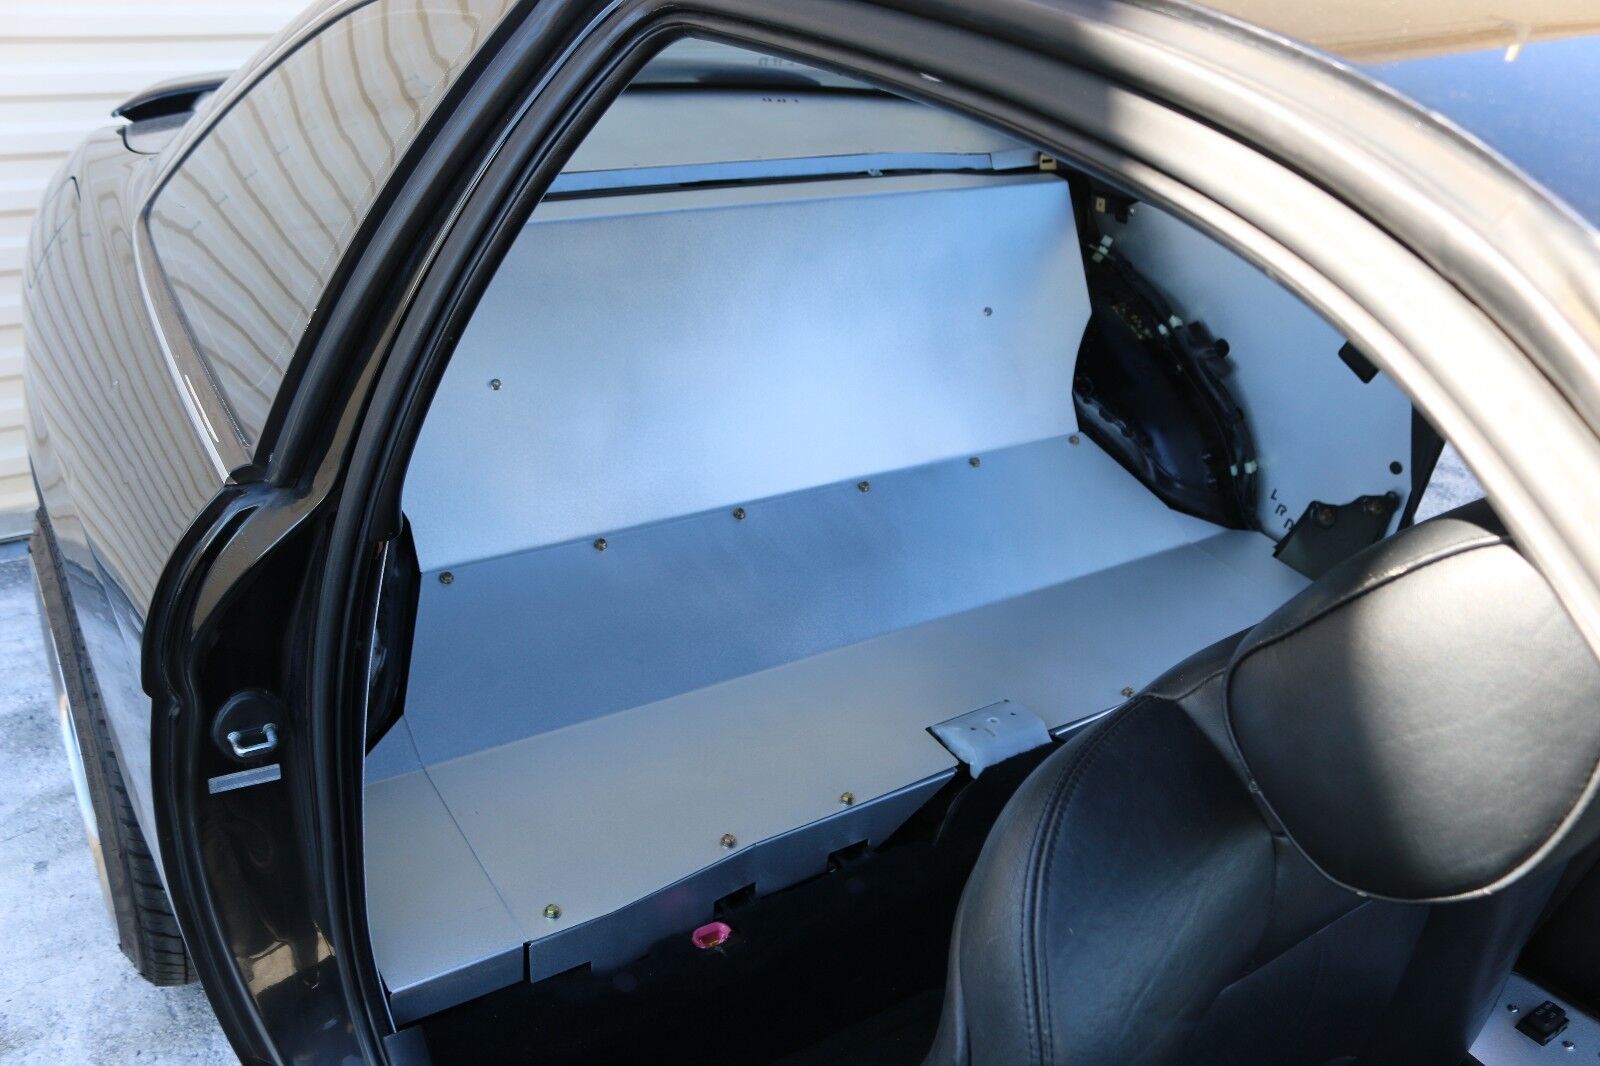 LRB Speed Aluminum Rear Seat Delete - Fits: Lexus SC300 SC400 Toyota Soarer